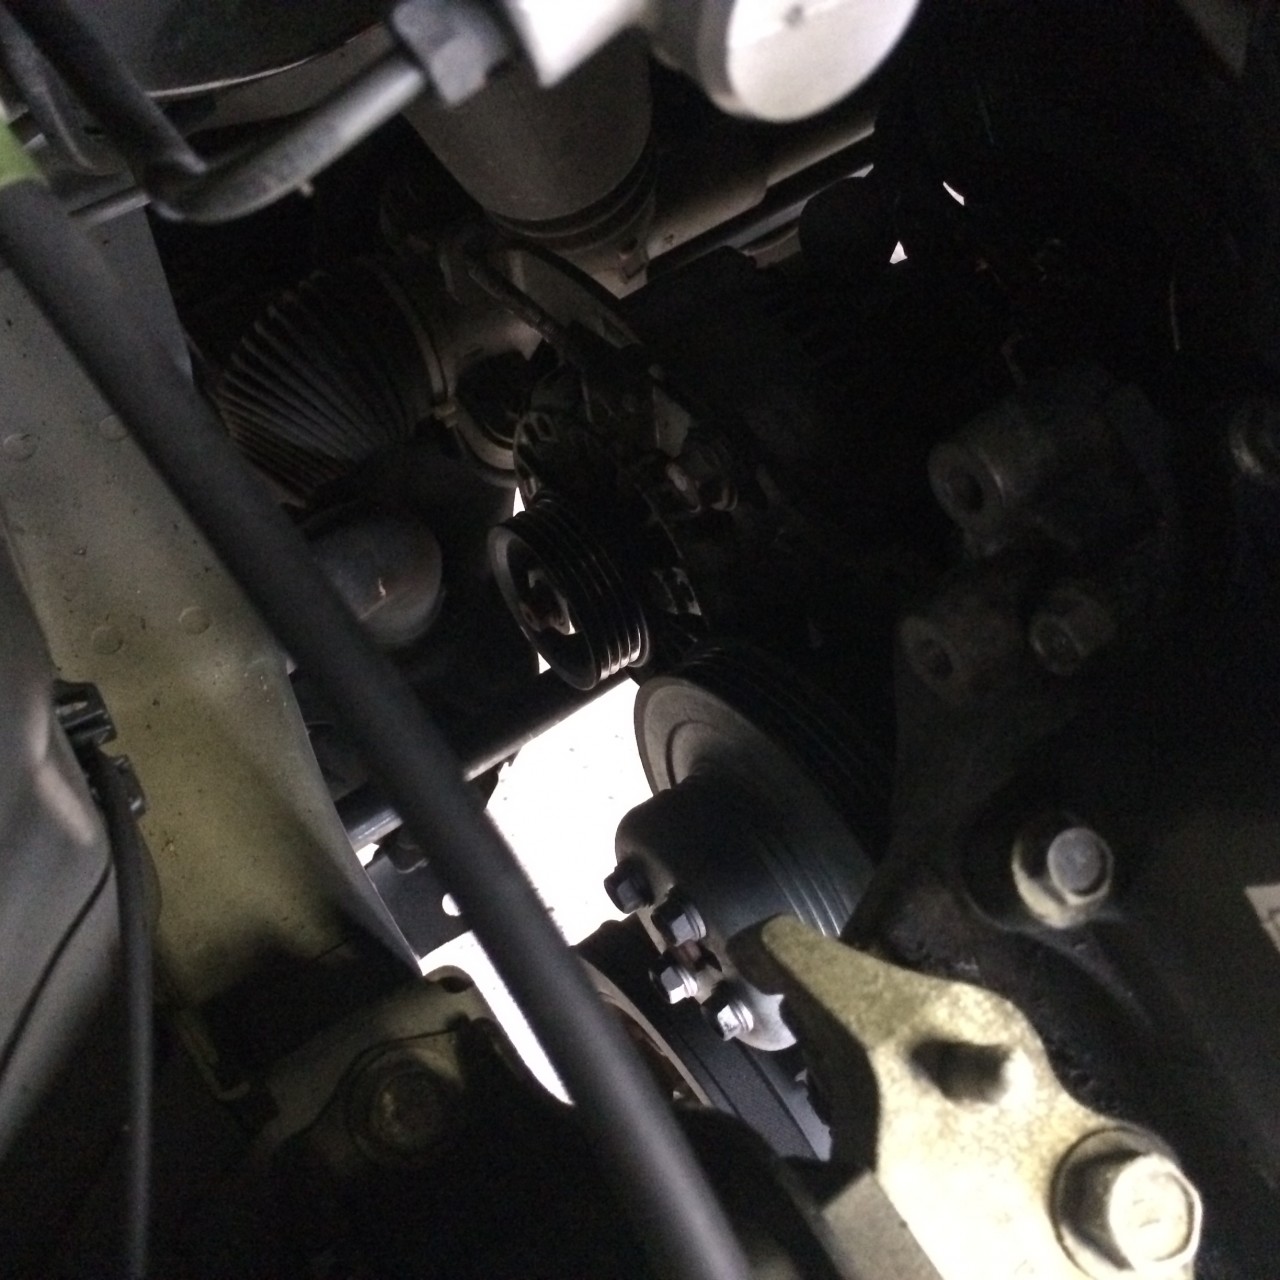 ダイハツ タントカスタム L375s のアイドリング時の異音修理です 豊岡市の中古車 軽自動車はキンキユーズドカーショップ 公式